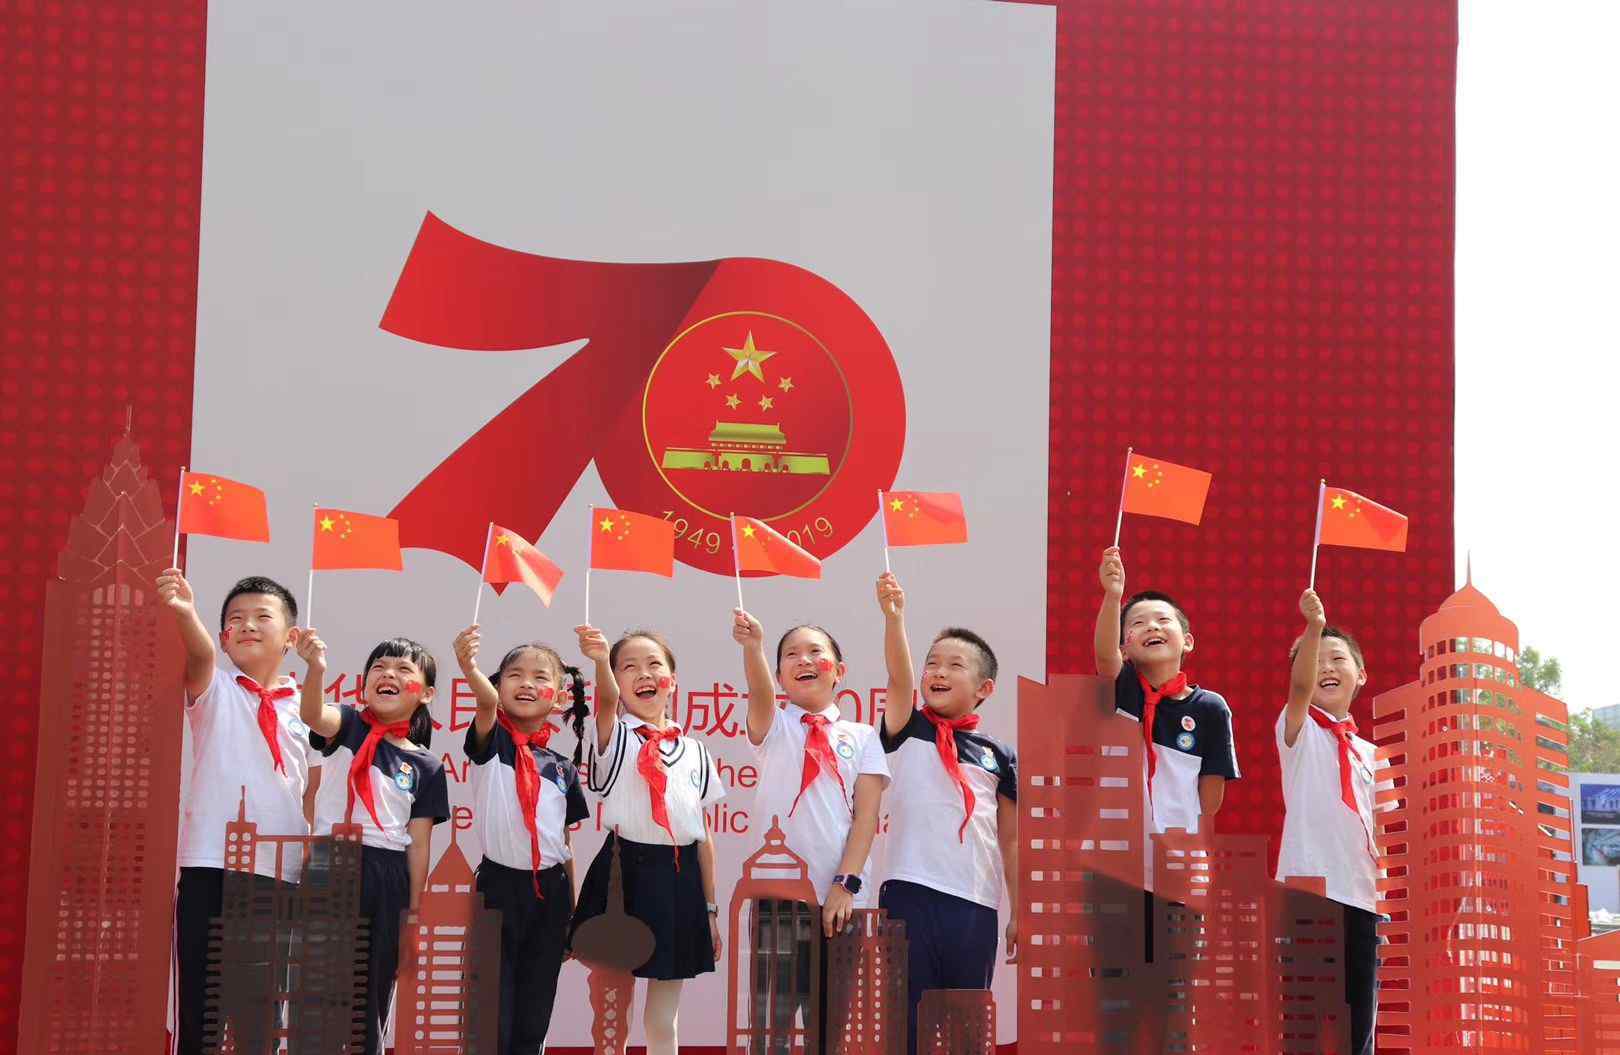 70周年图片 温州市庆祝新中国成立70周年图片展成假期热门打卡地